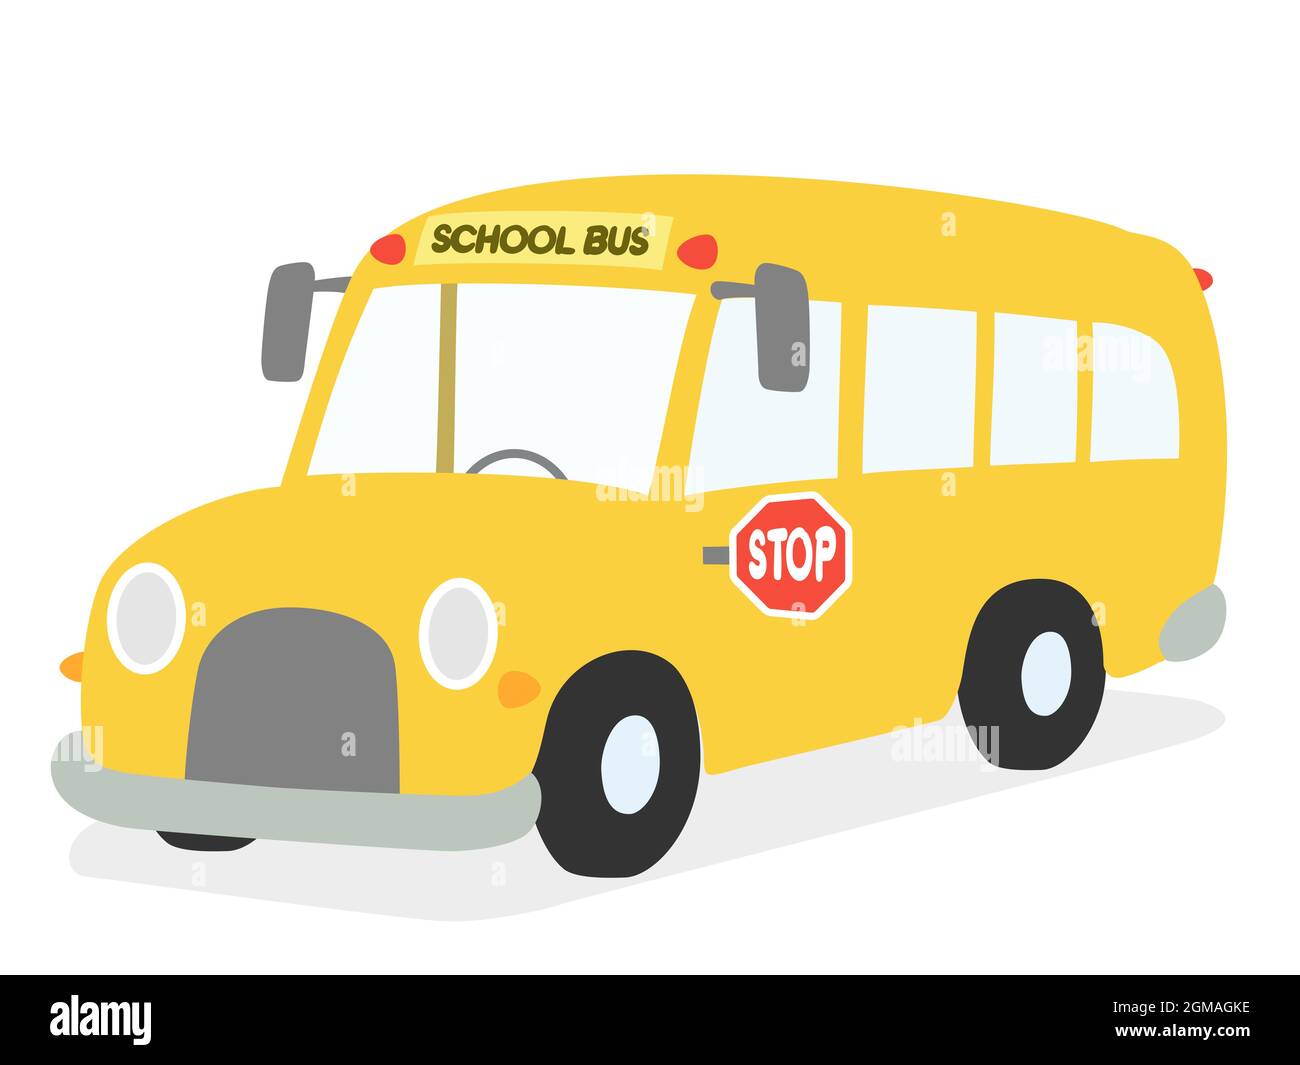 Schulbus Kinder Vektorgrafik. Student Transport Cartoon auf weiß isoliert. Stock Vektor